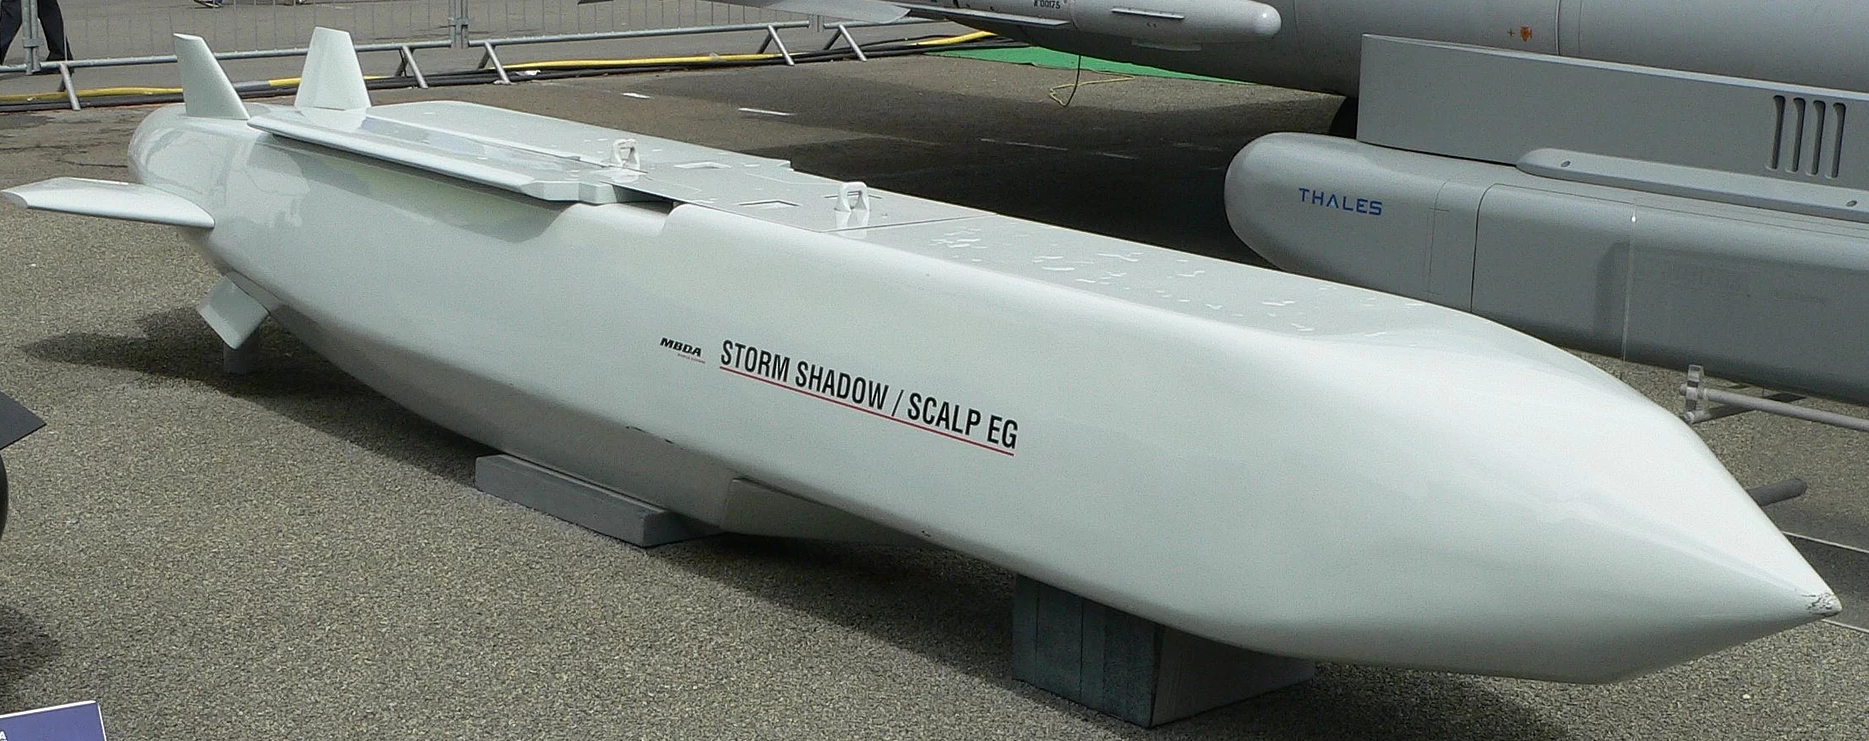 "Бавовни" буде більше: що відомо про ракети Storm Shadow, які Британія передала Україні 